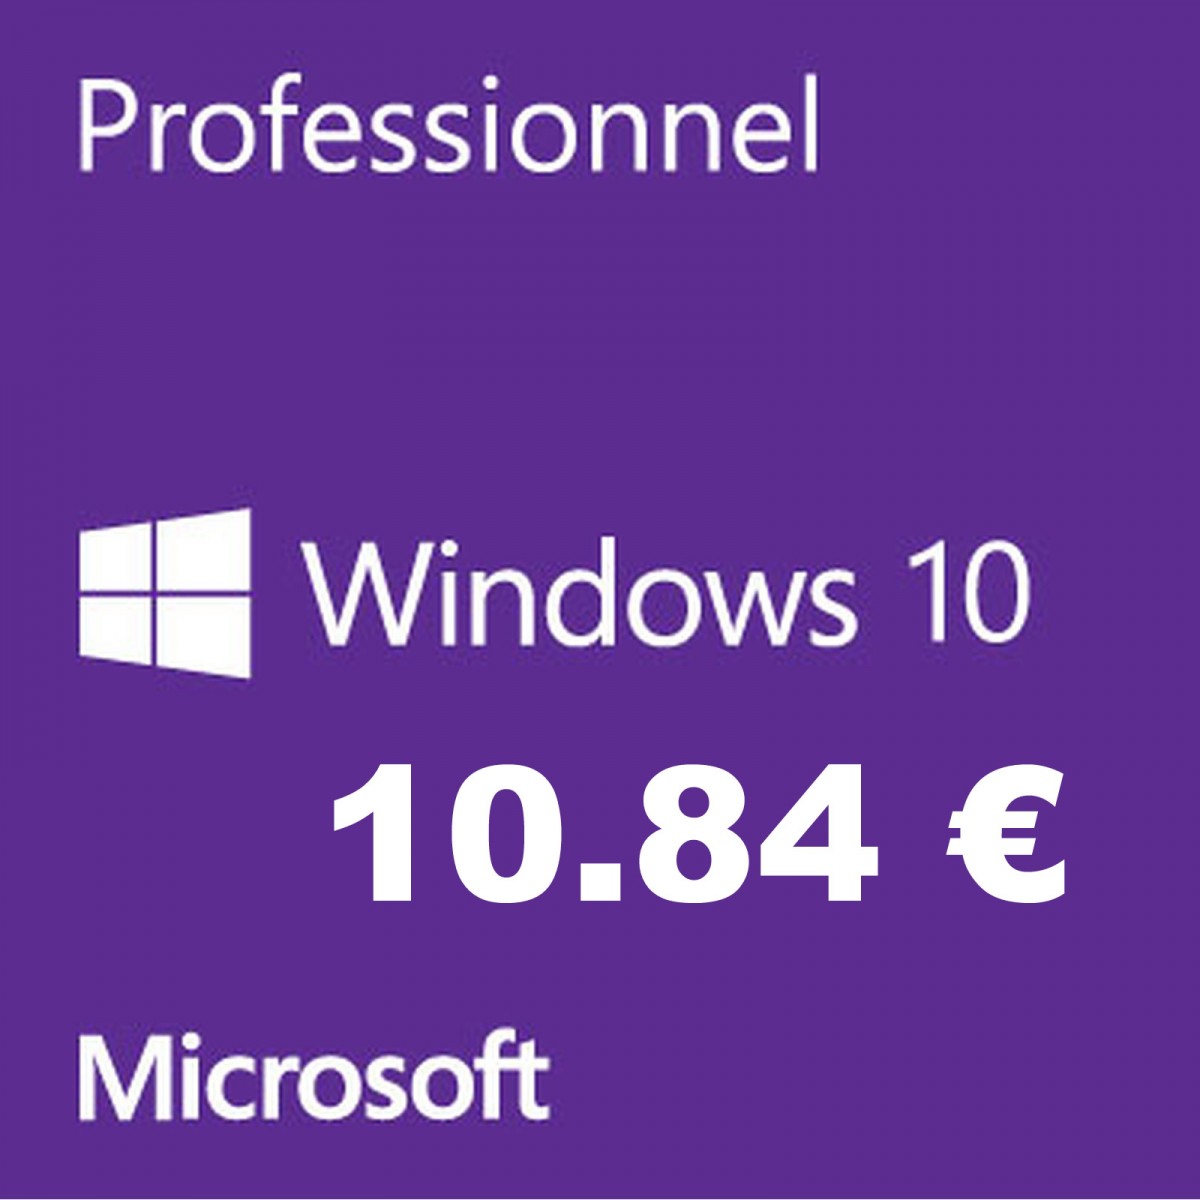 cl-windows-pas-cher licence-windows-pas-cher licence-office-pas-cher microsoft-windows-10-pro-oem office-2019 18-10-2019